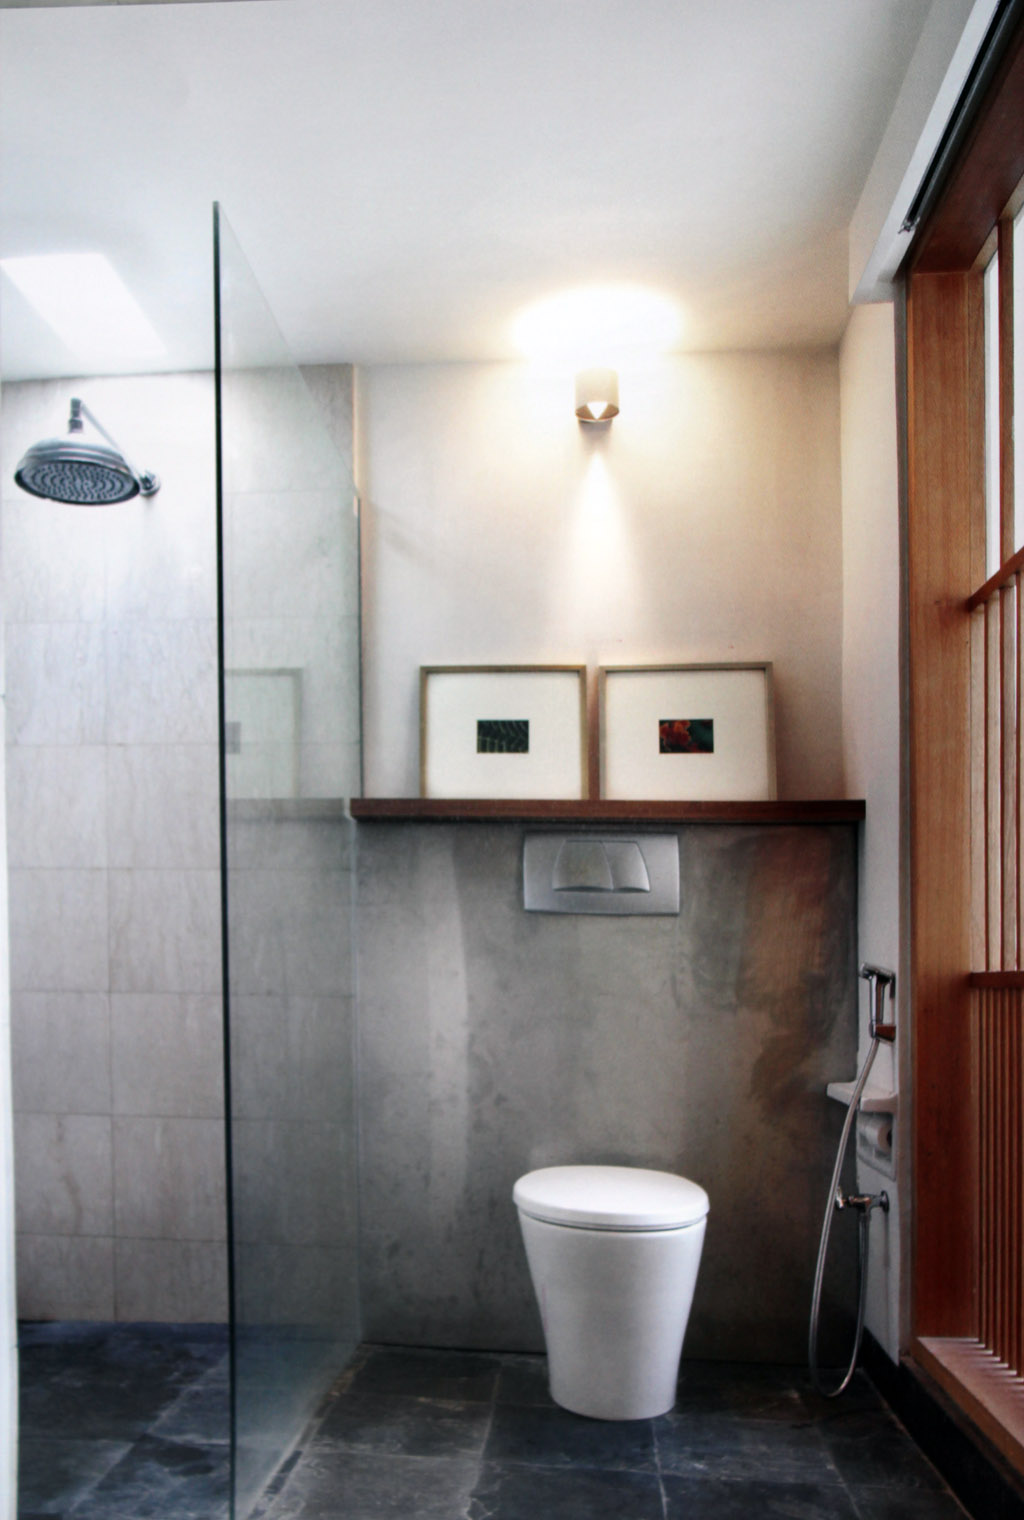 45 magnificent pictures of retro bathroom tile design ...